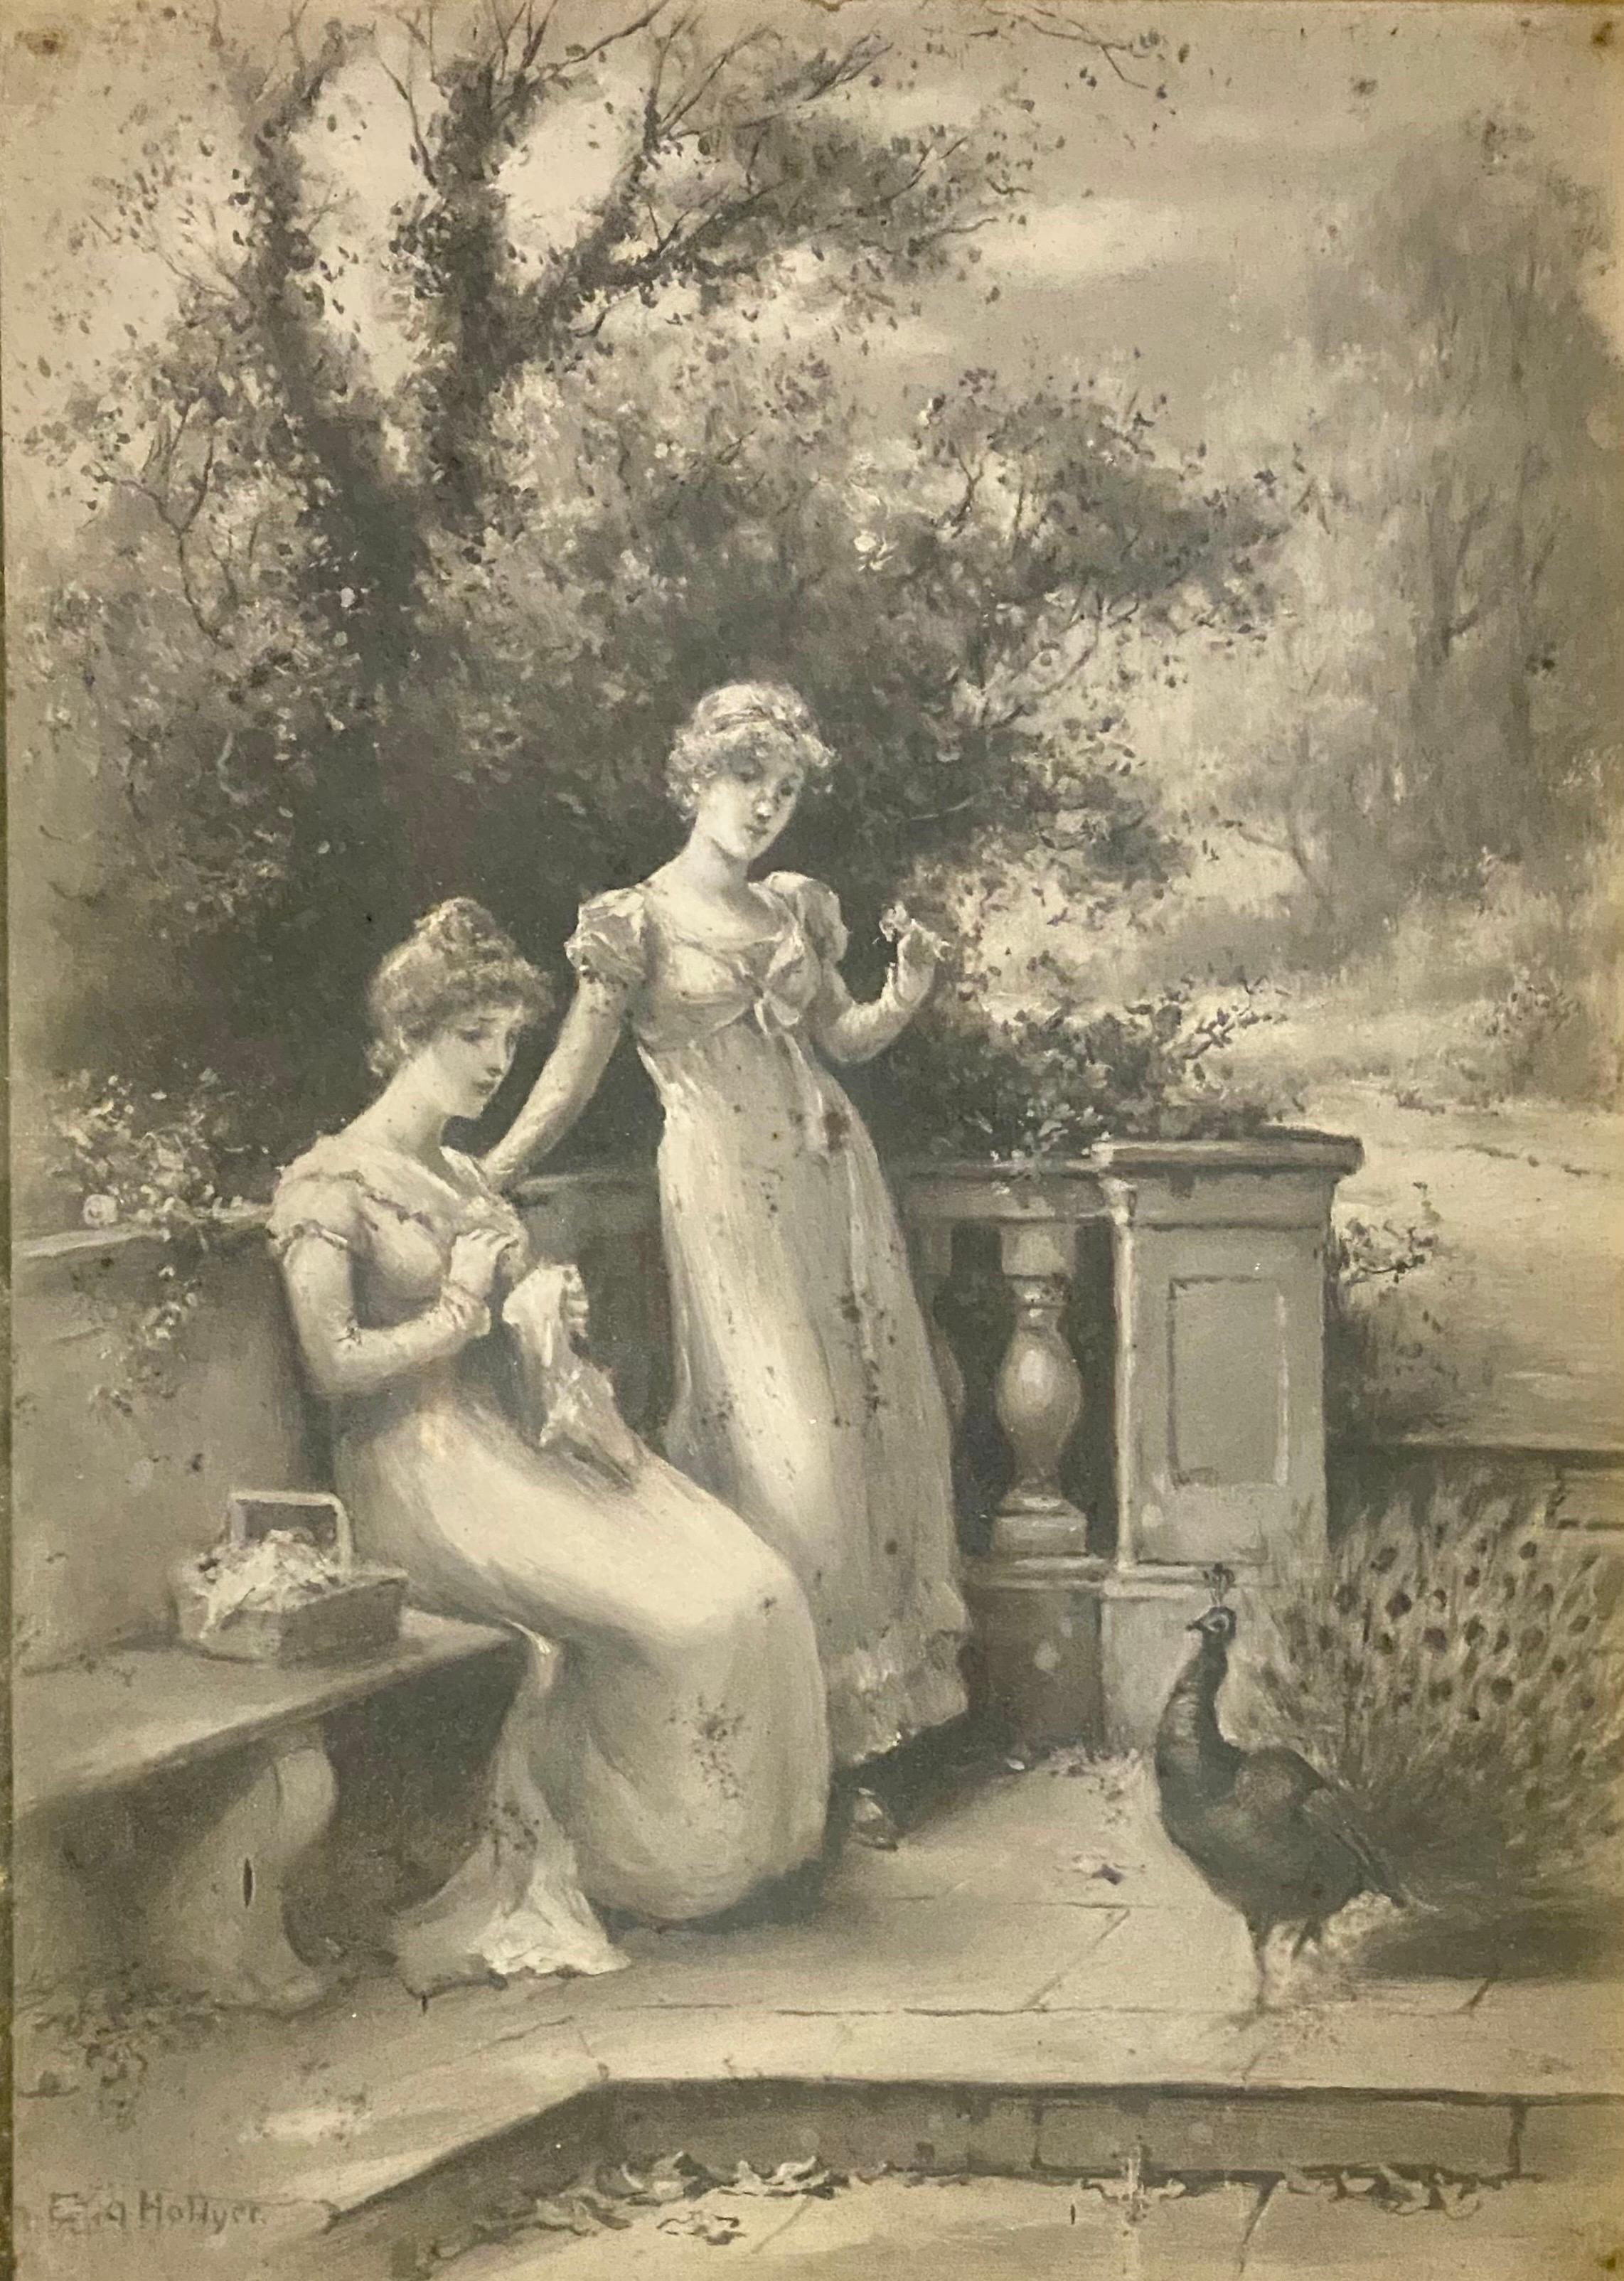 Paire d'Eva Hollyer (1865-1948) britannique. Grisaille, huile sur toile, peintures en vente 1